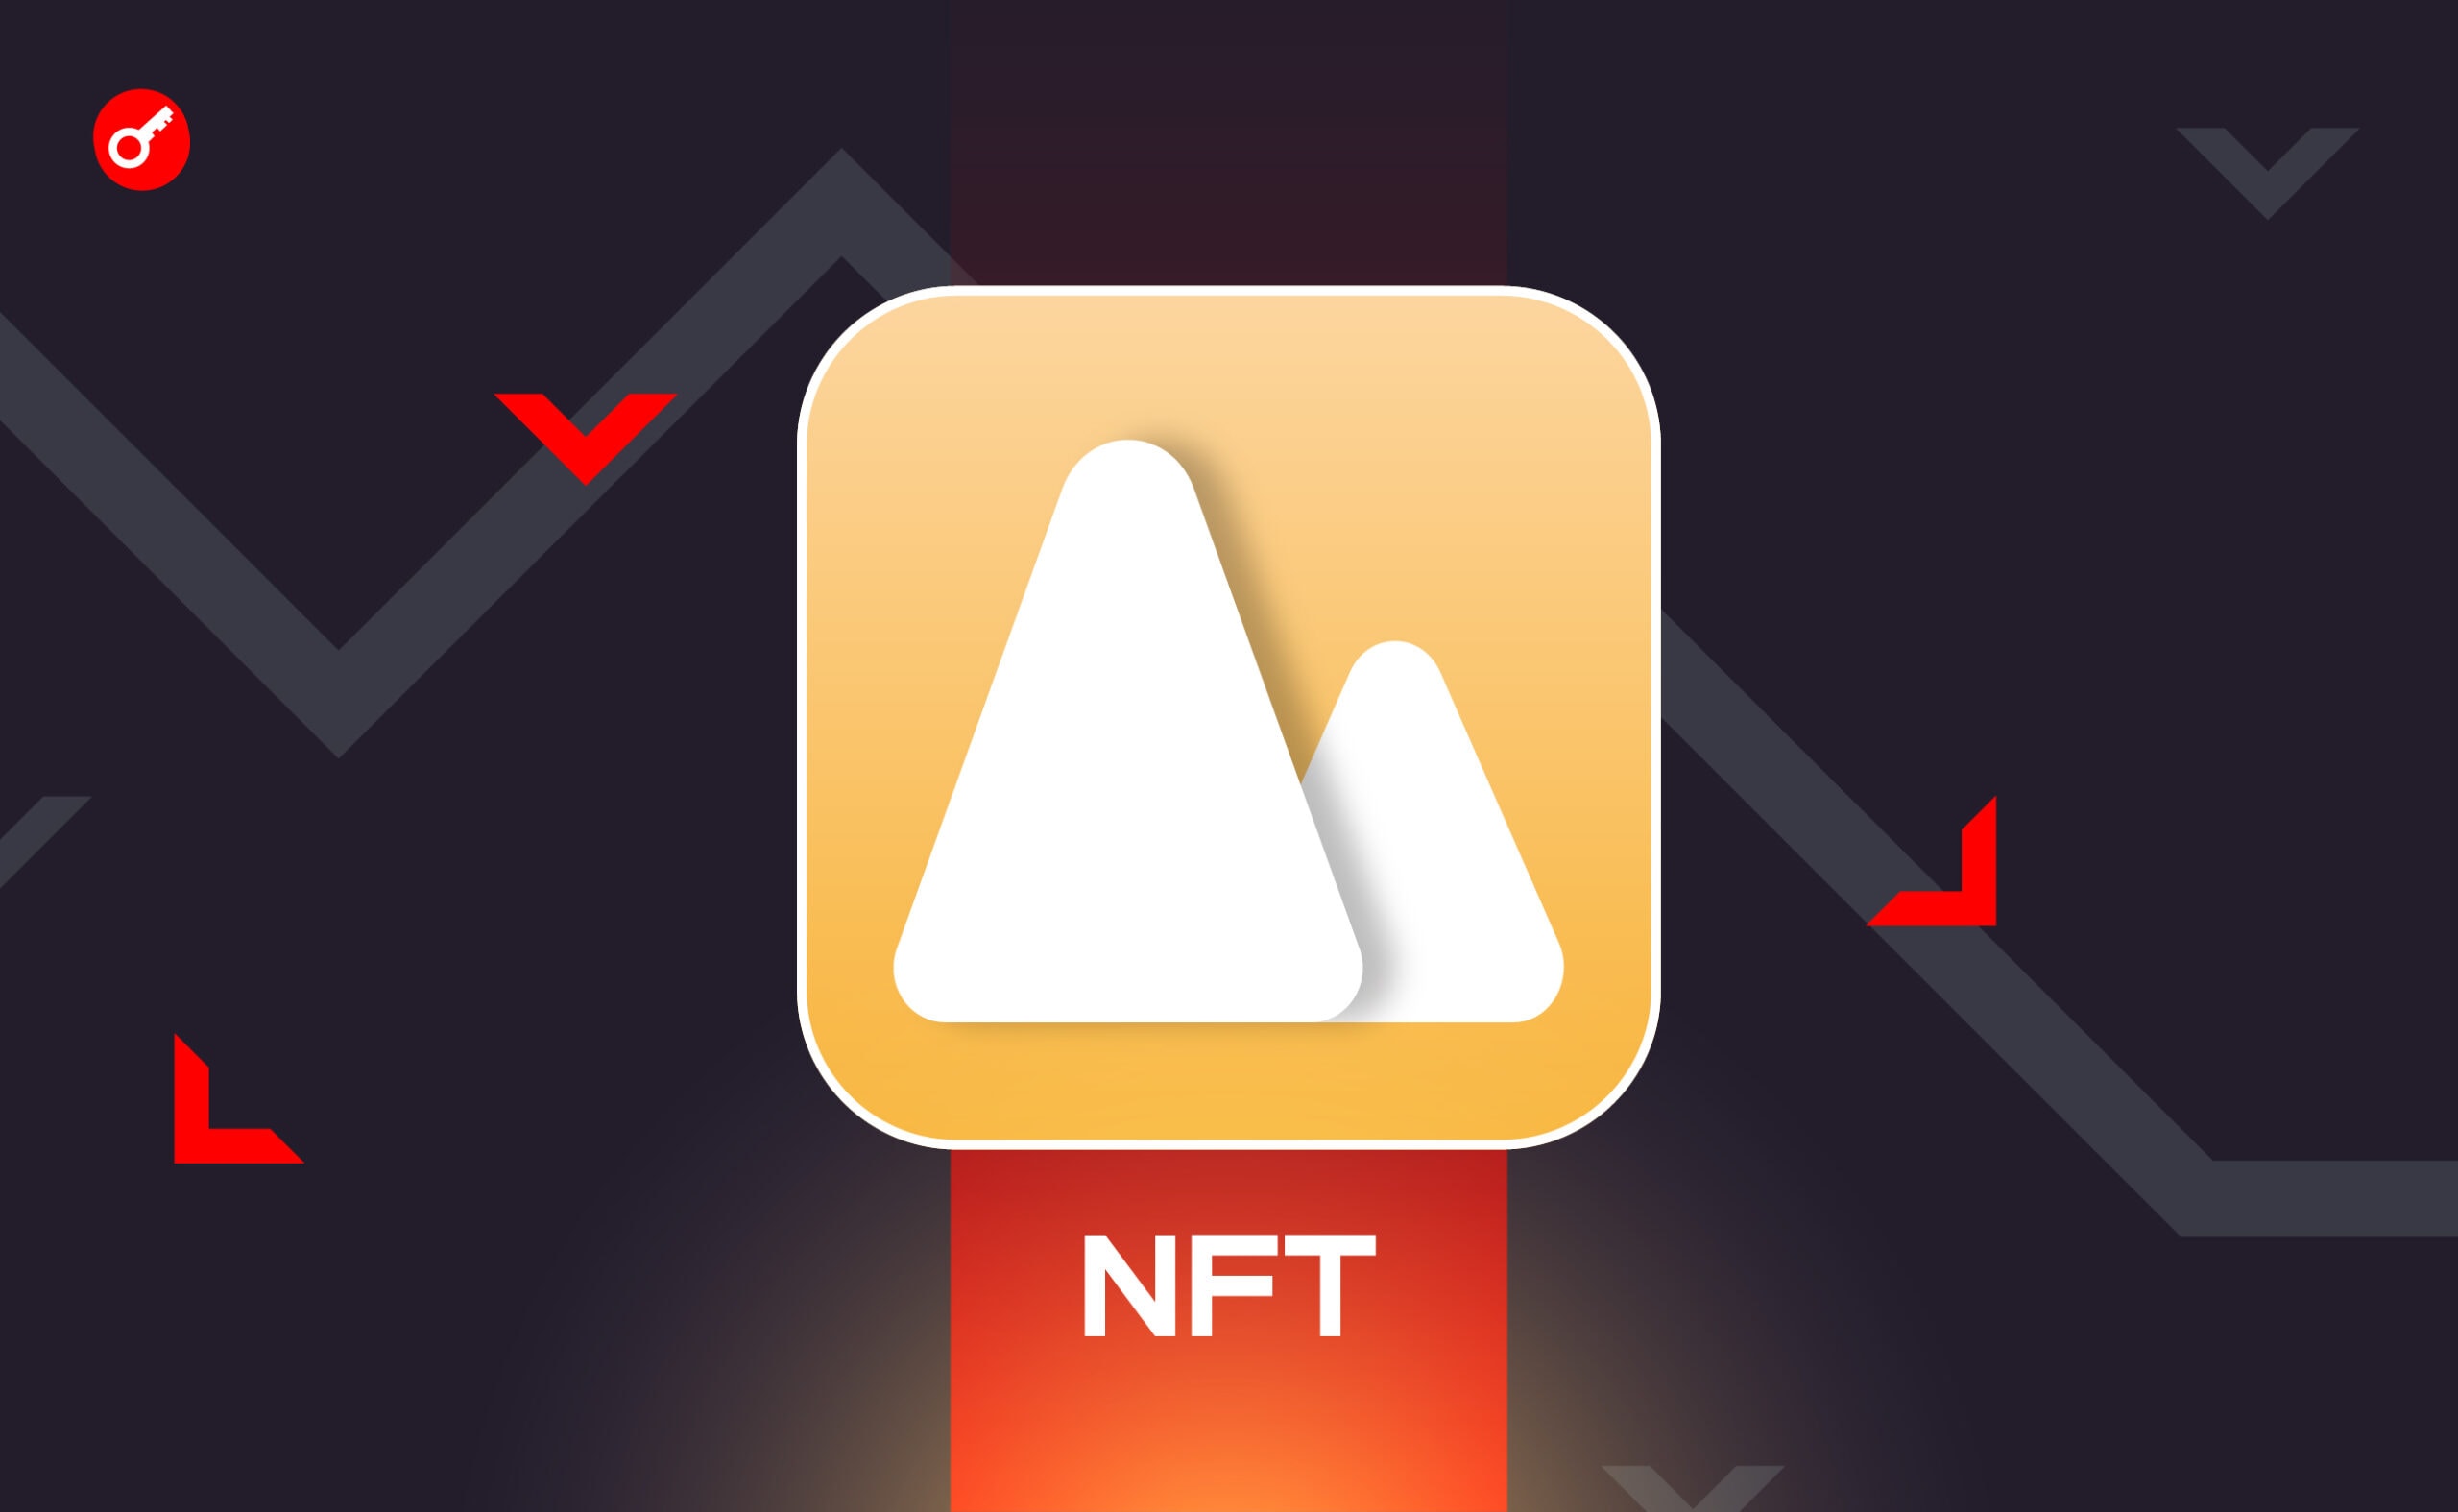 Объем торгов NFT за неделю упал до двухлетнего минимума. Заглавный коллаж новости.